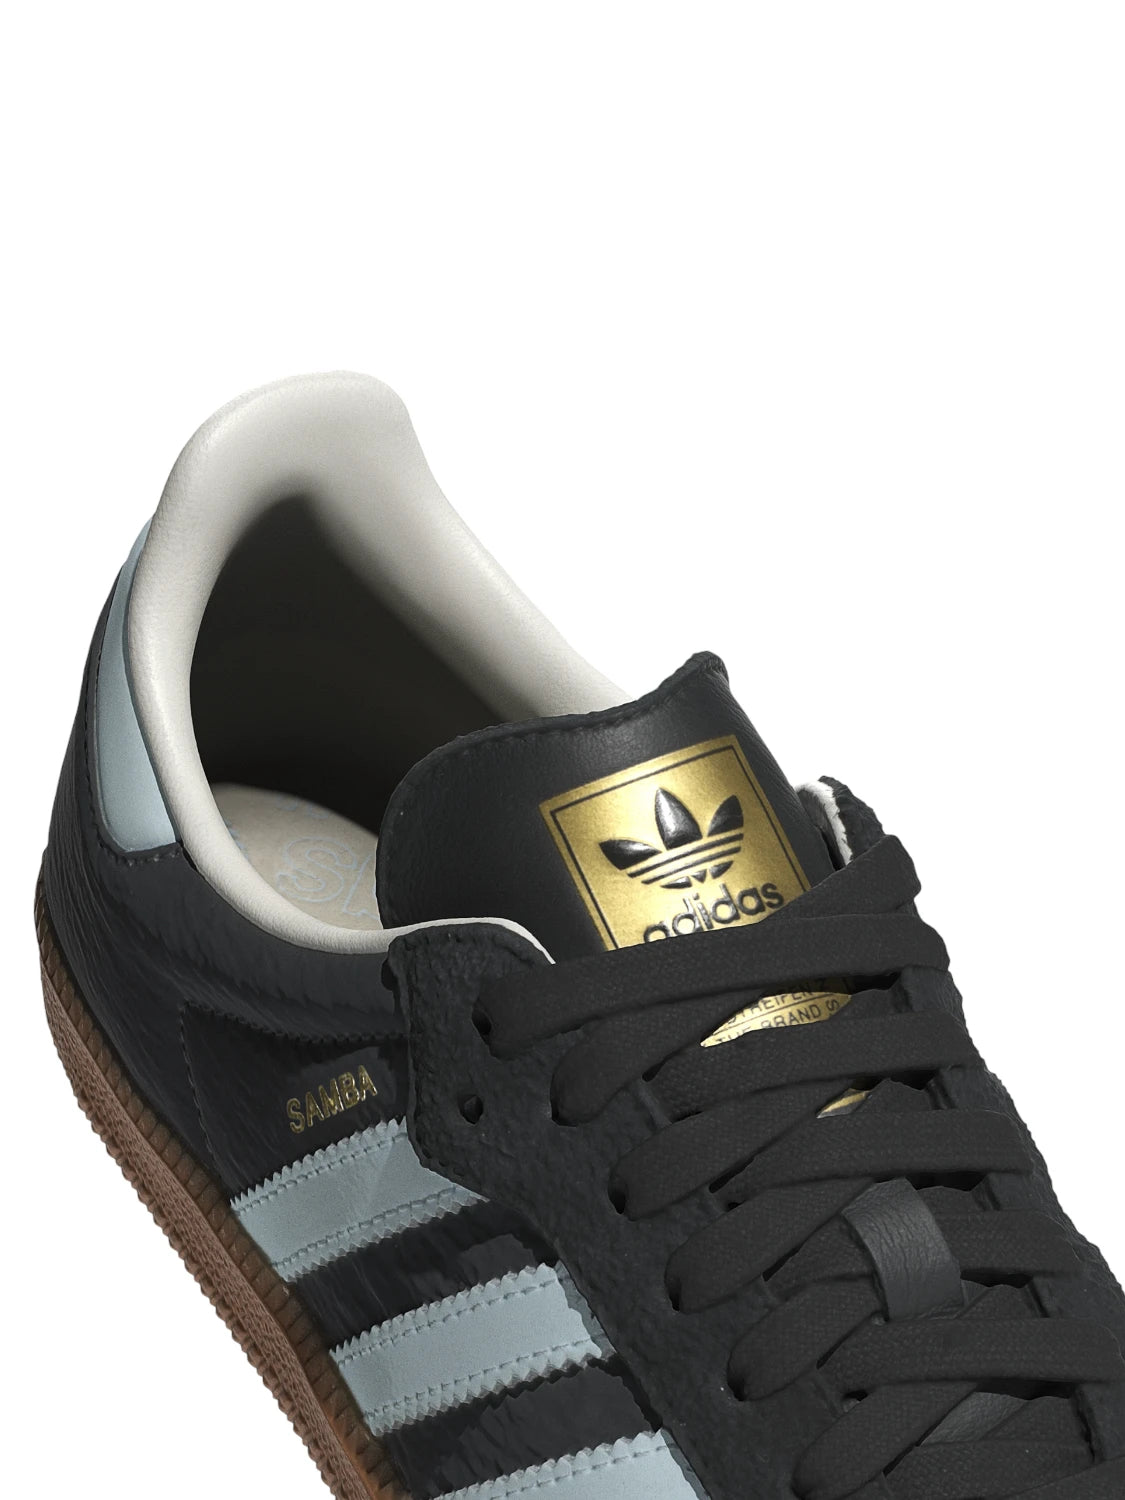 Adidas Samba OG W Grigio-Sneakers-Adidas Originals-Vittorio Citro Boutique